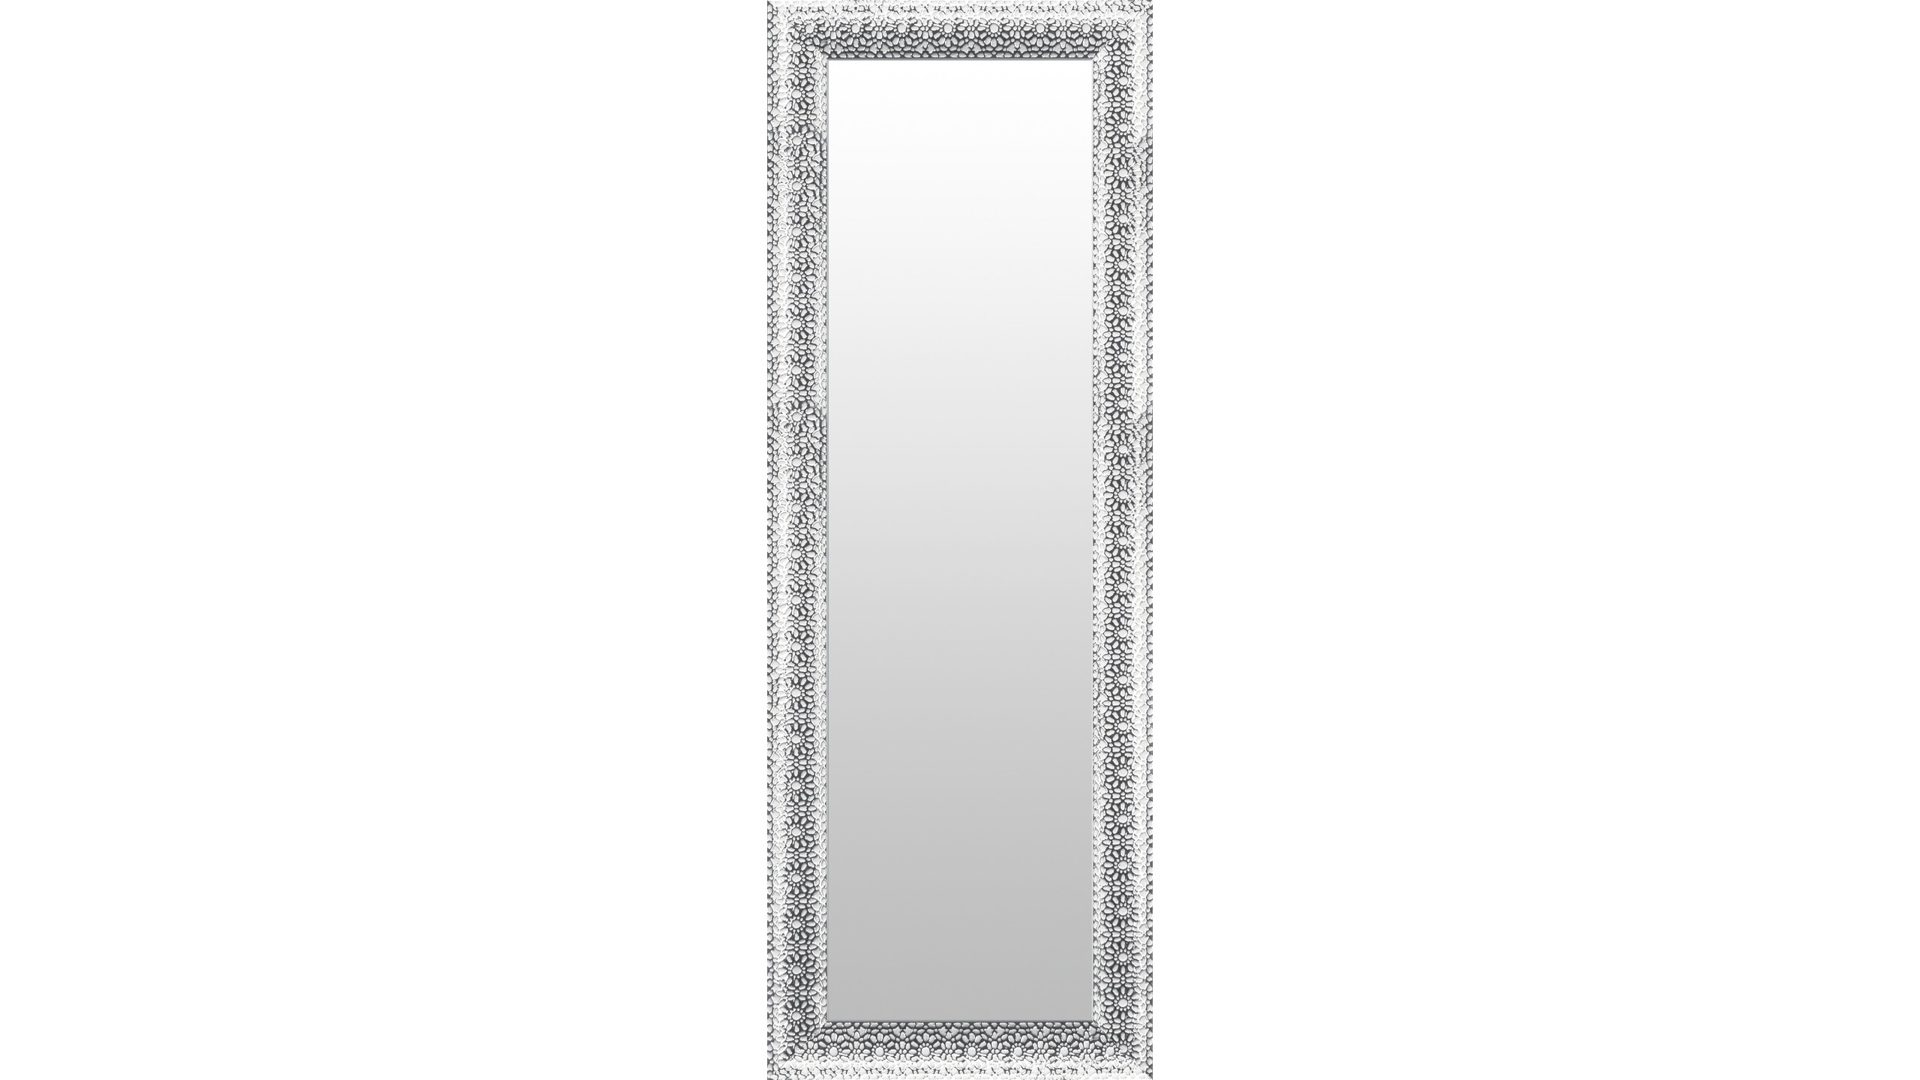 Wandspiegel Len-fra aus Spiegel Kunststoff in Silber LEN-FRA Wandspiegel Garderobenspiegel DUNKERQUE ca. 94 x 194 cm, Rahmen Blume silber weiss